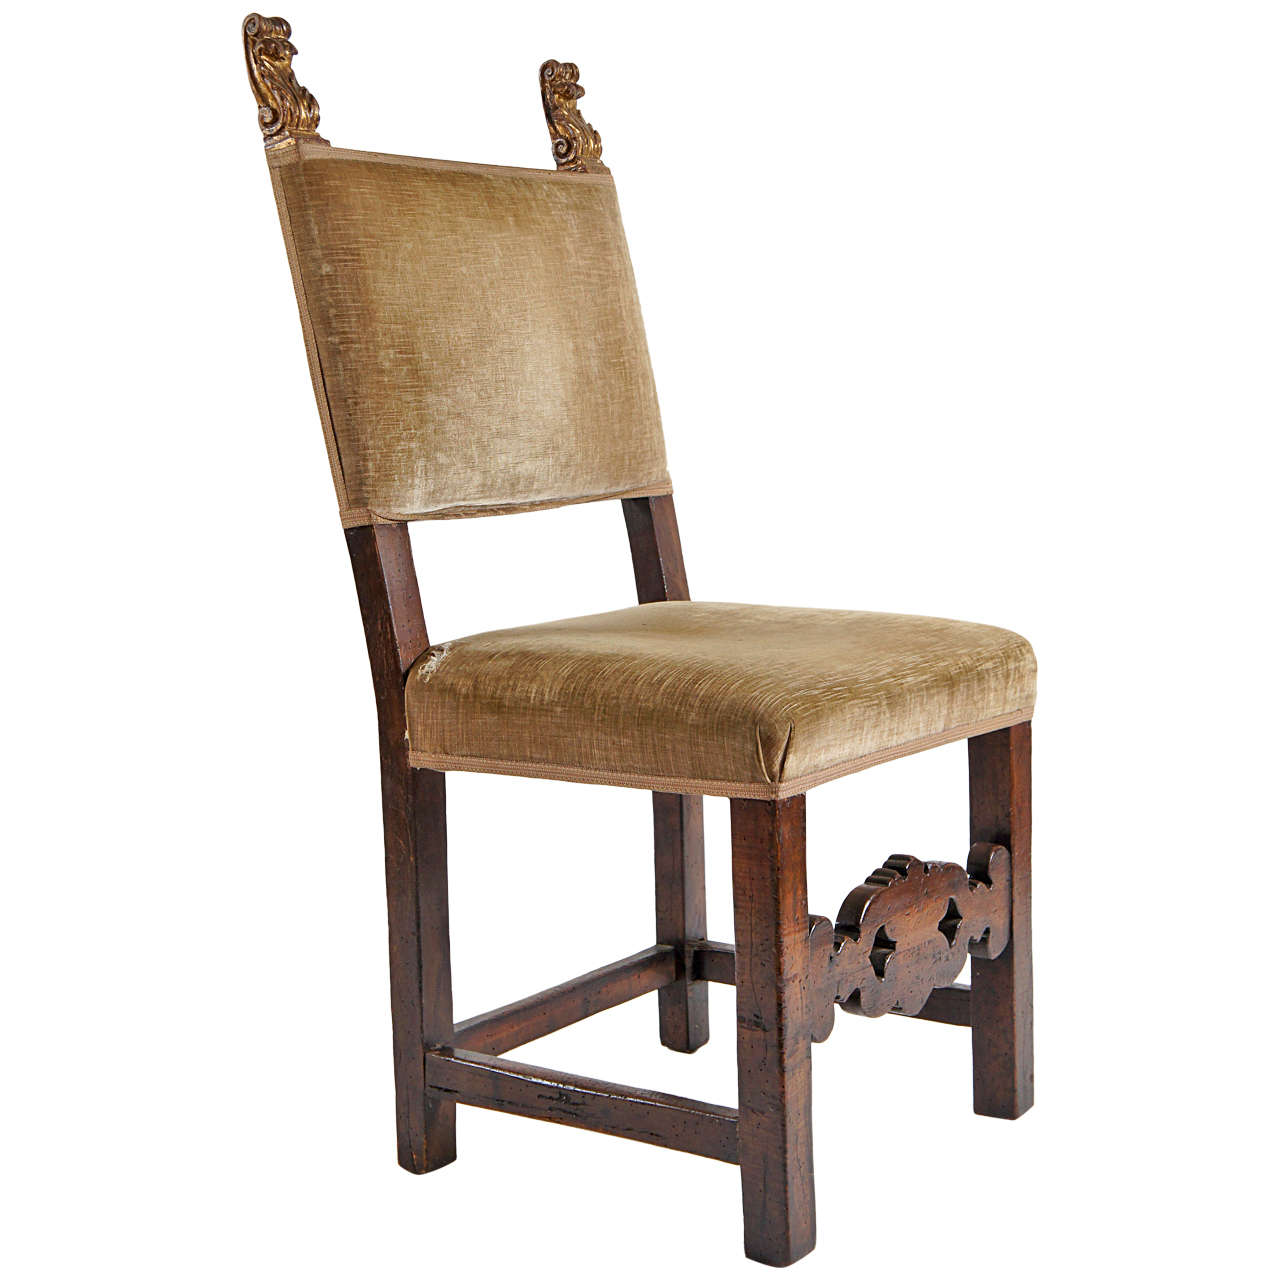 Fine Italian Parcel Gilt Chair, c. 1650